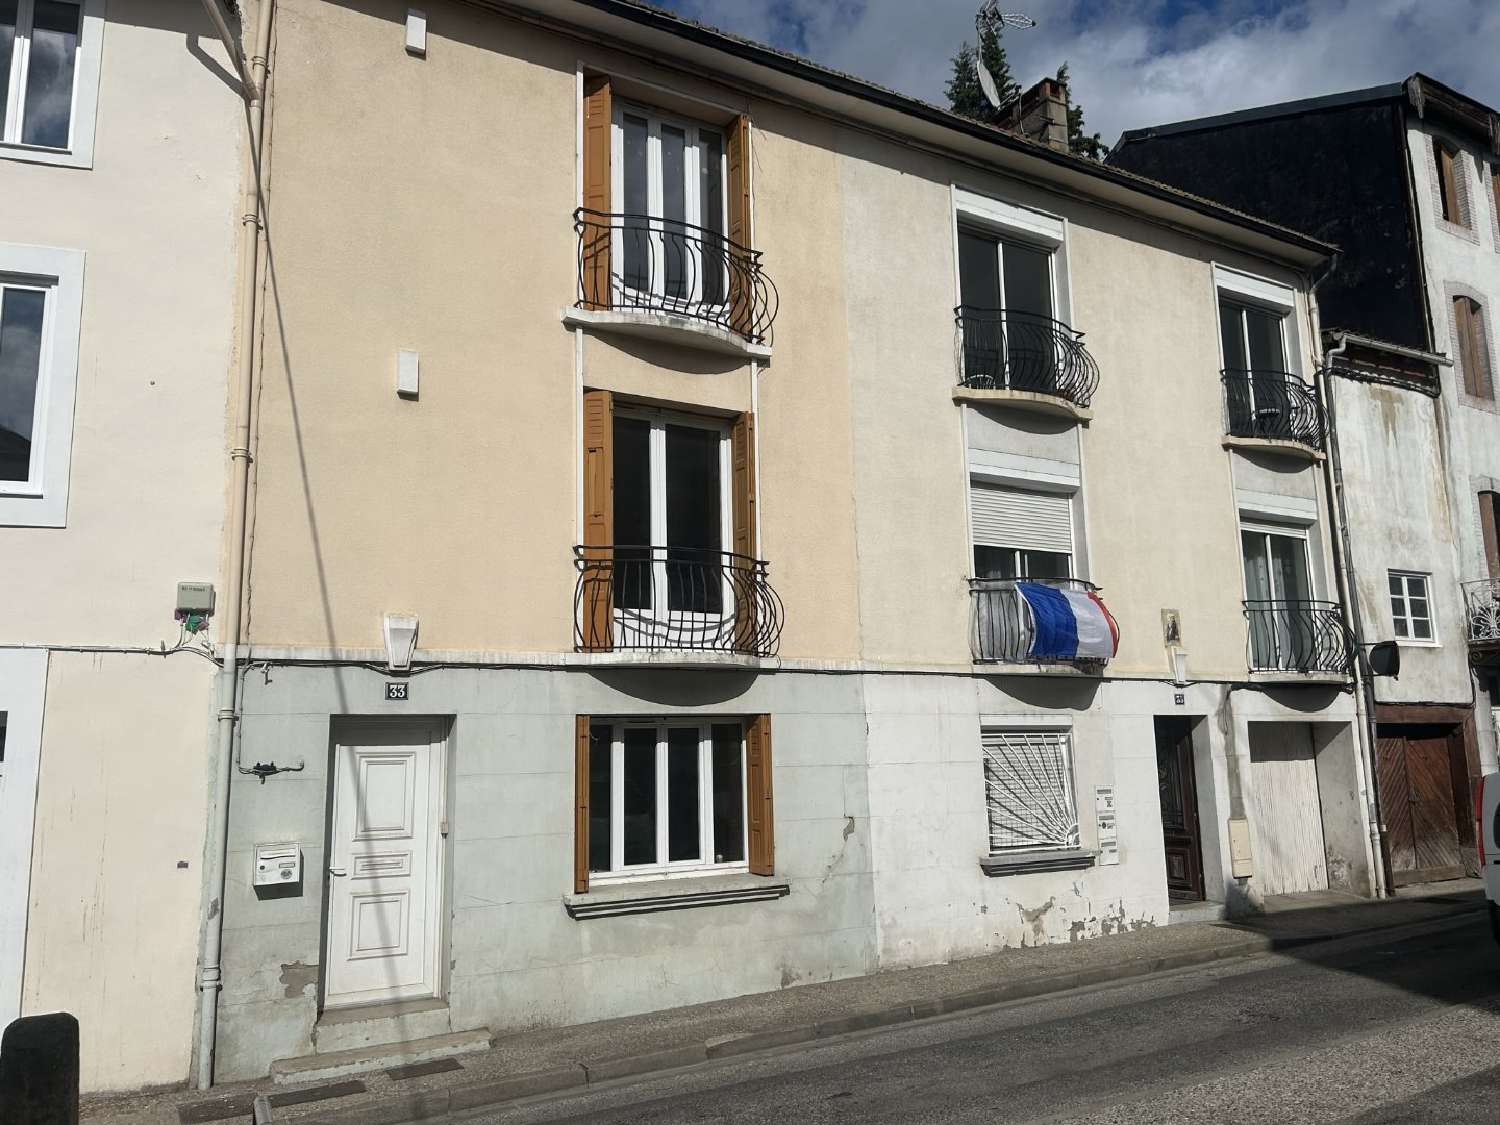  à vendre maison Lavelanet Ariège 3